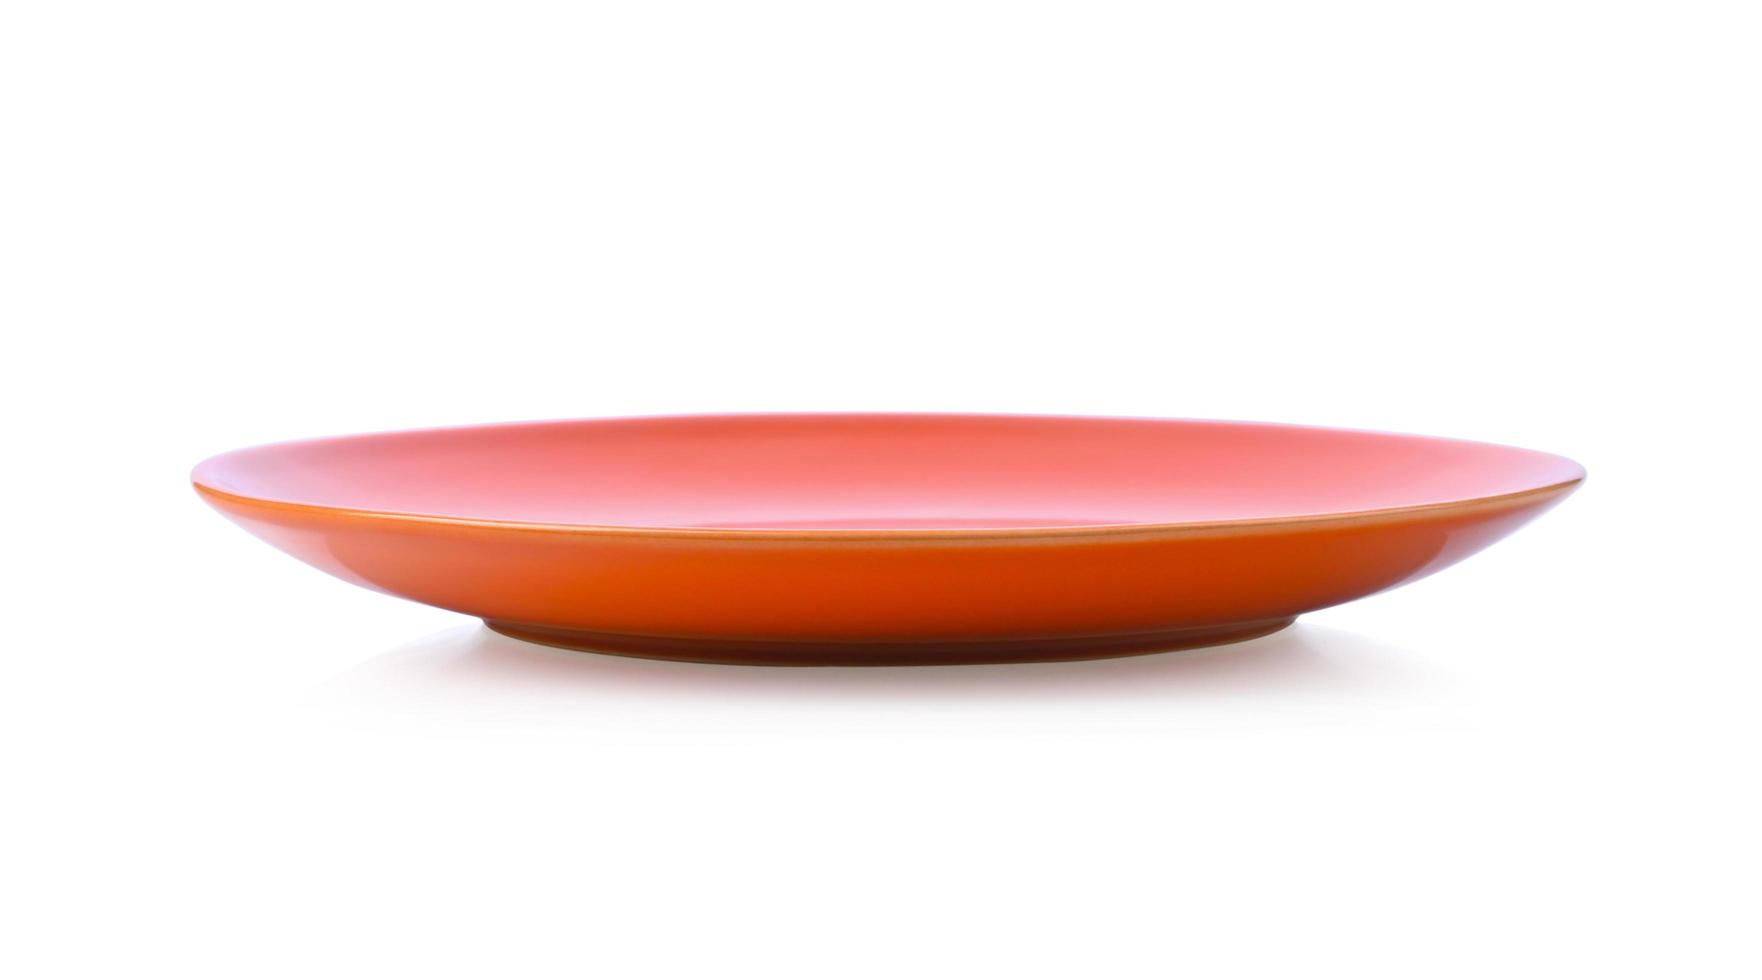 piatto in ceramica arancione vuoto isolato su sfondo bianco. foto